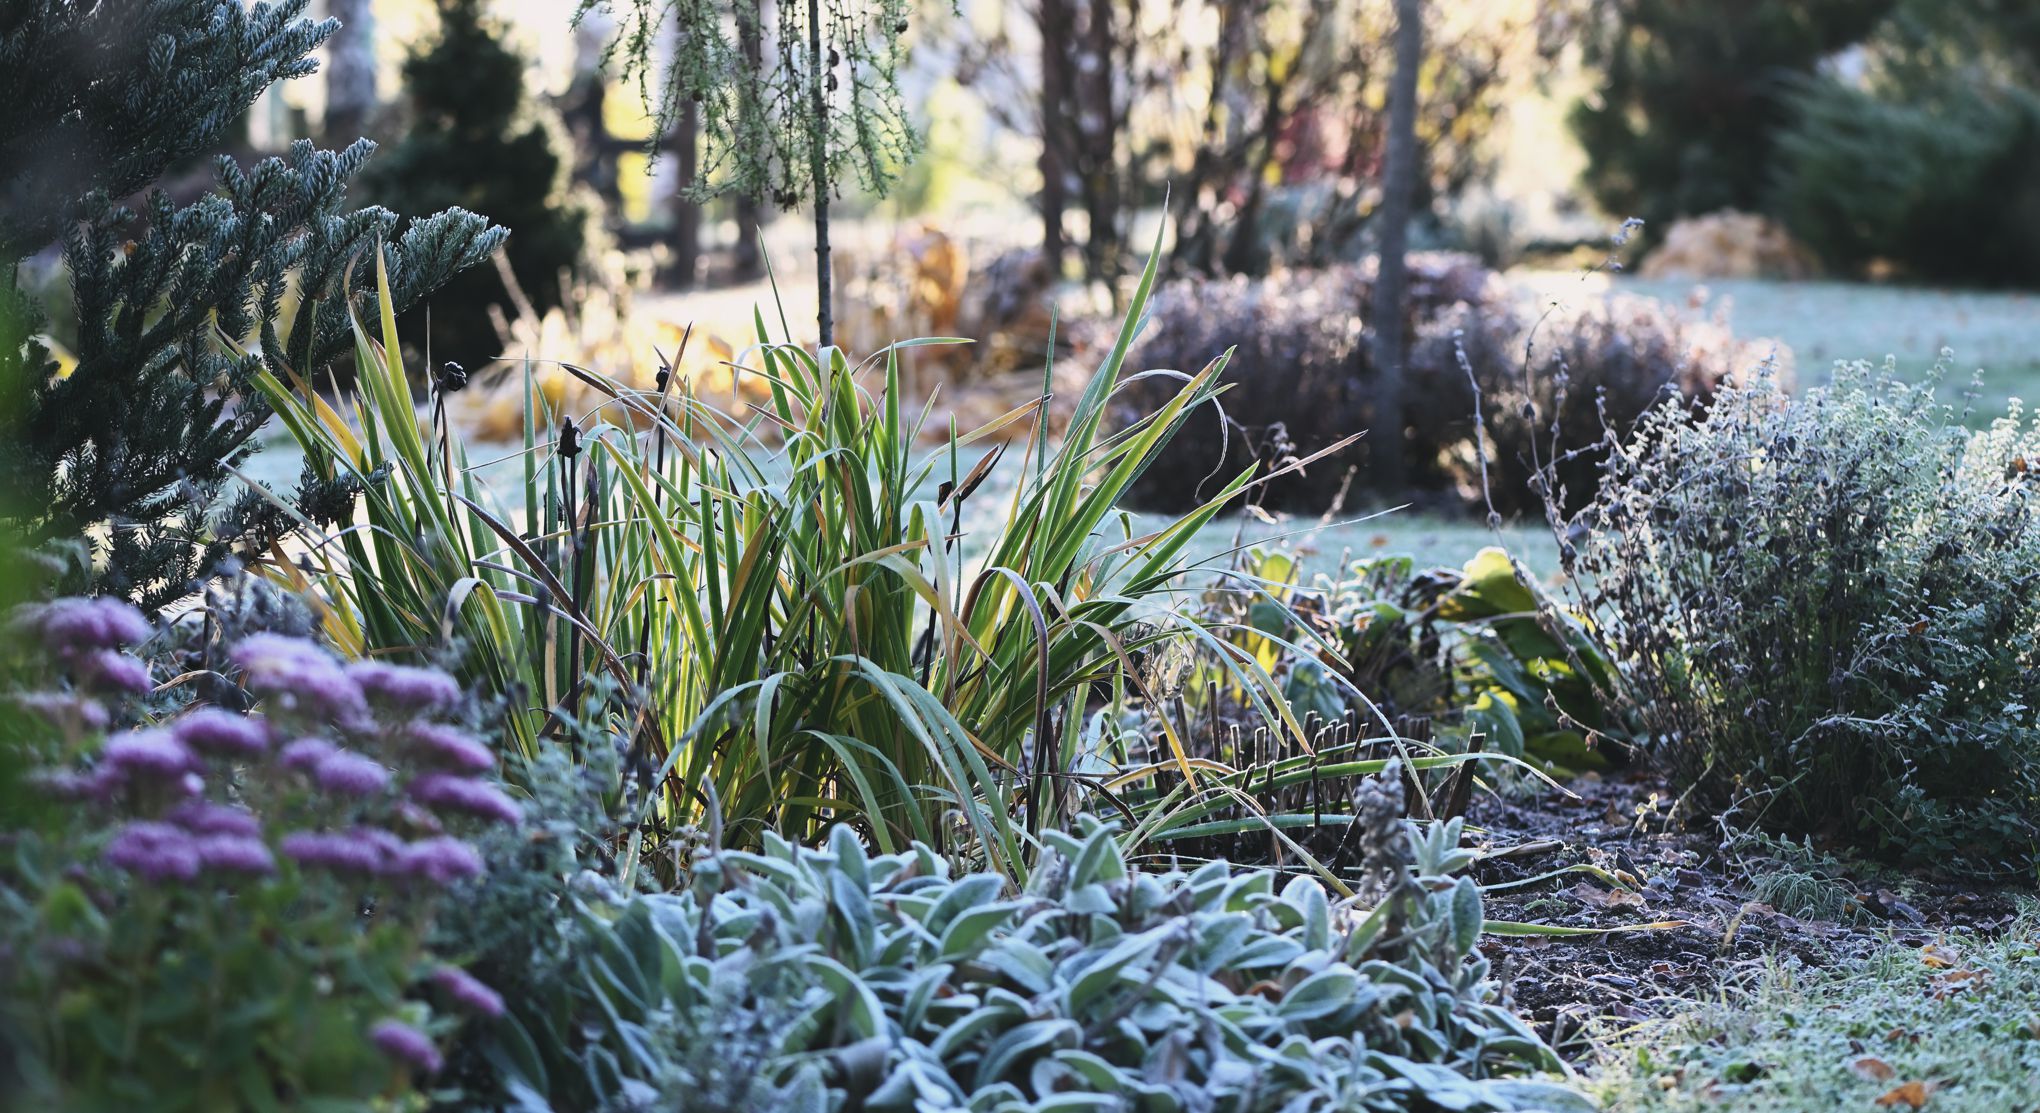 Comment protéger vos plantes du froid ? Le gel arrive